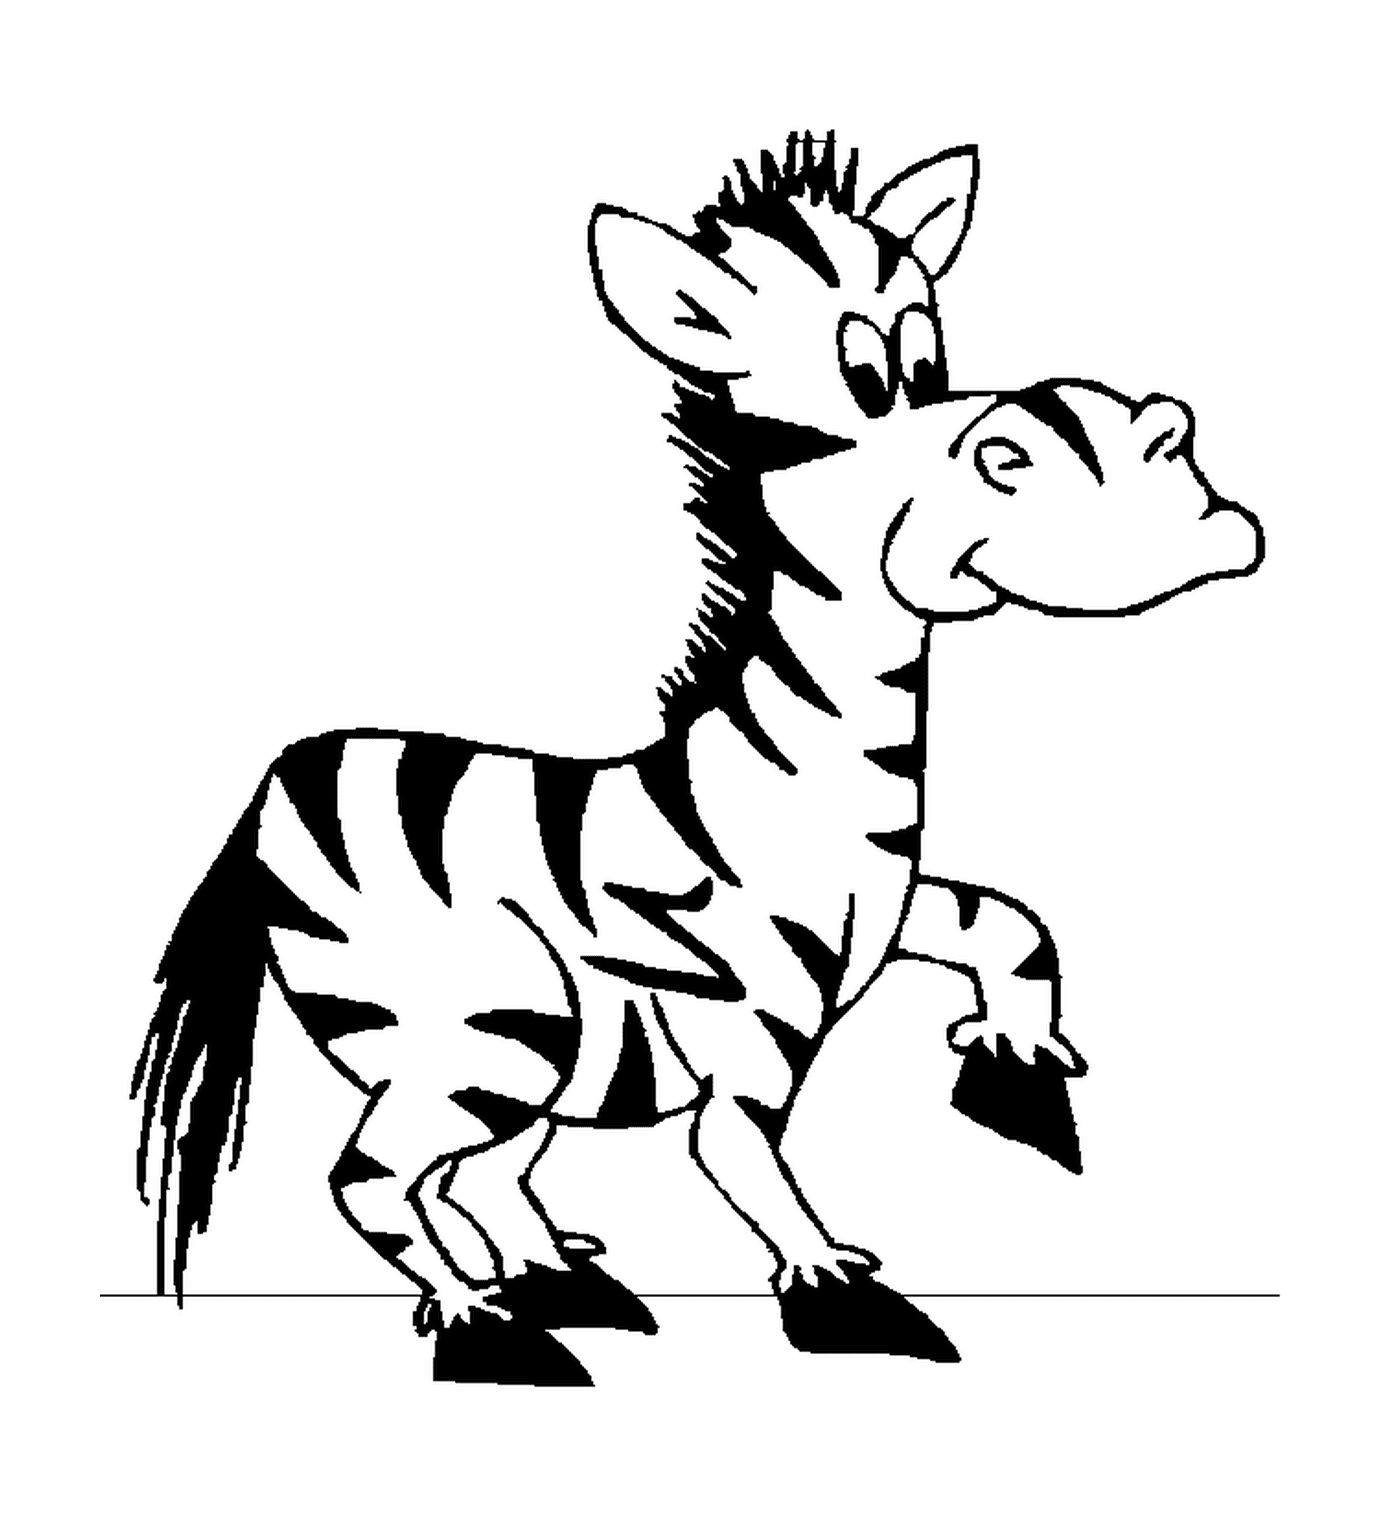  Zebra accattivante e misterioso 